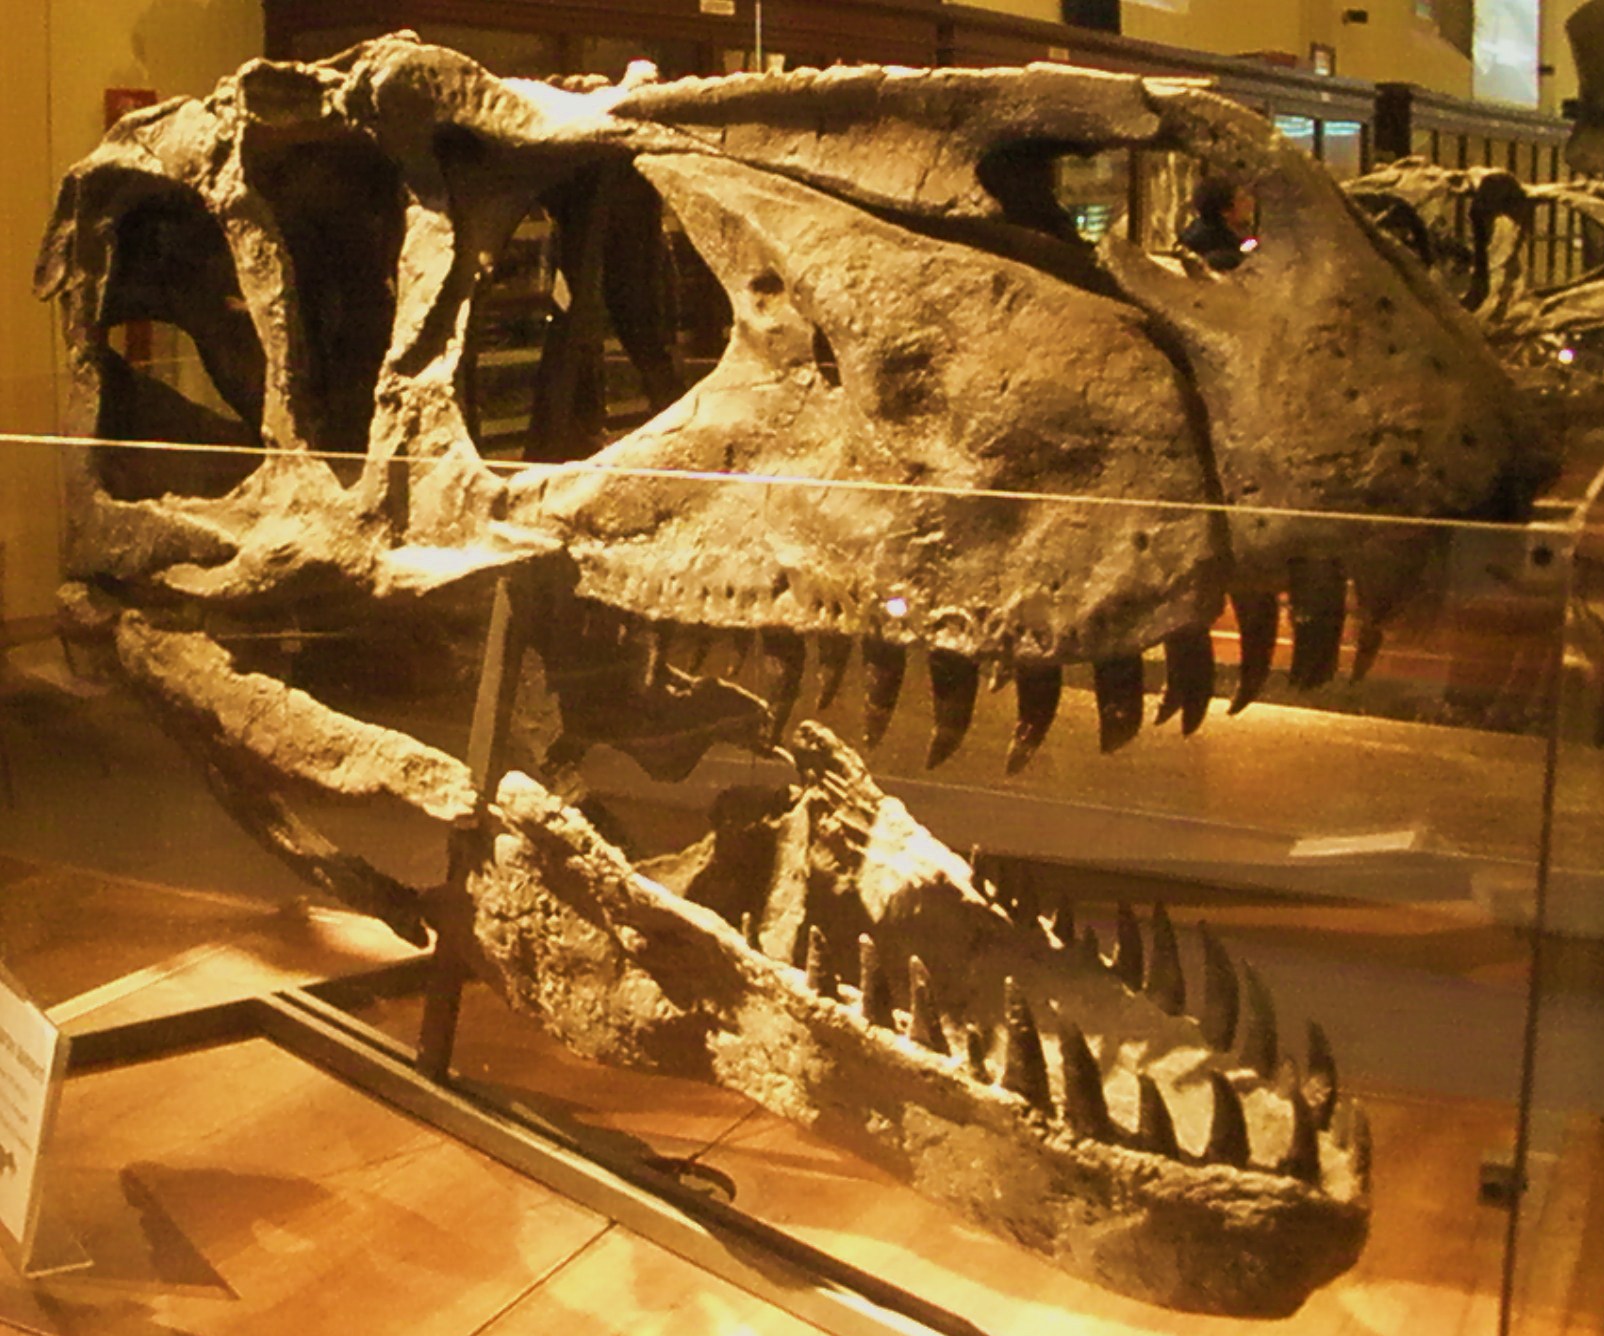 Lebka severoamerického megalosaurida druhu Torvosaurus tanneri zaujme zejména svými rozměry – její délka činí až bezmála 1,4 metru. Je možné, že součástí právě takové lebky byly fosilní zuby objevené v Tendaguru. Existuje tedy pravděpodobnost, že jej